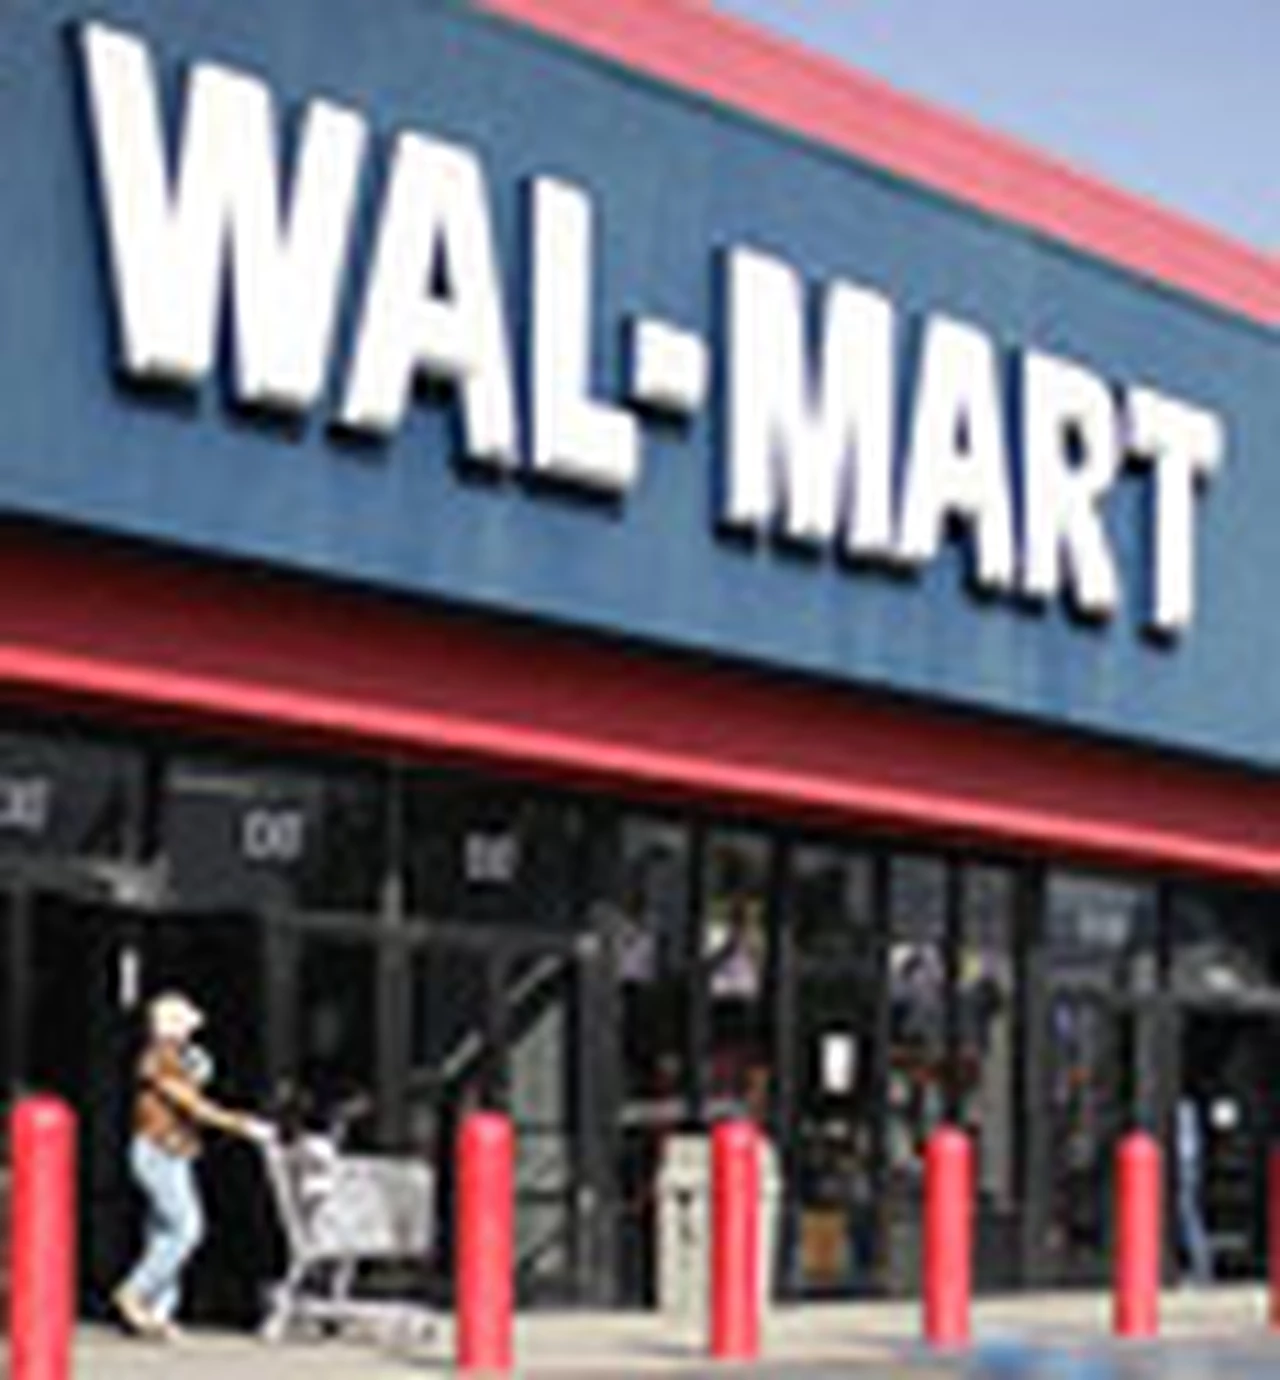 Wal-Mart invertirá en la Argentina u$s100 millones en dos años